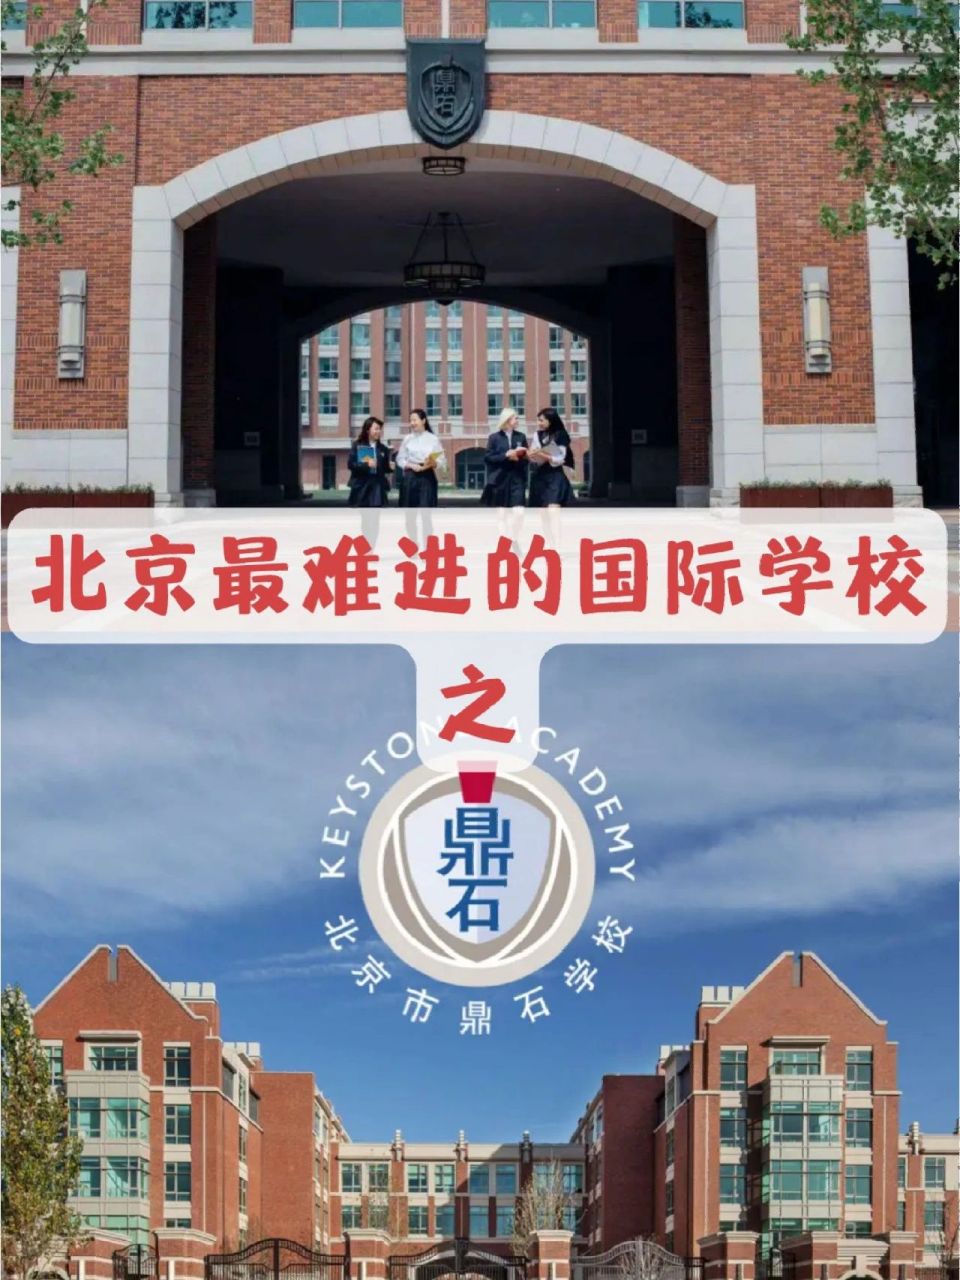 北京最难进的国际学校之鼎石 北京鼎石国际学校作为北京国际学校中的